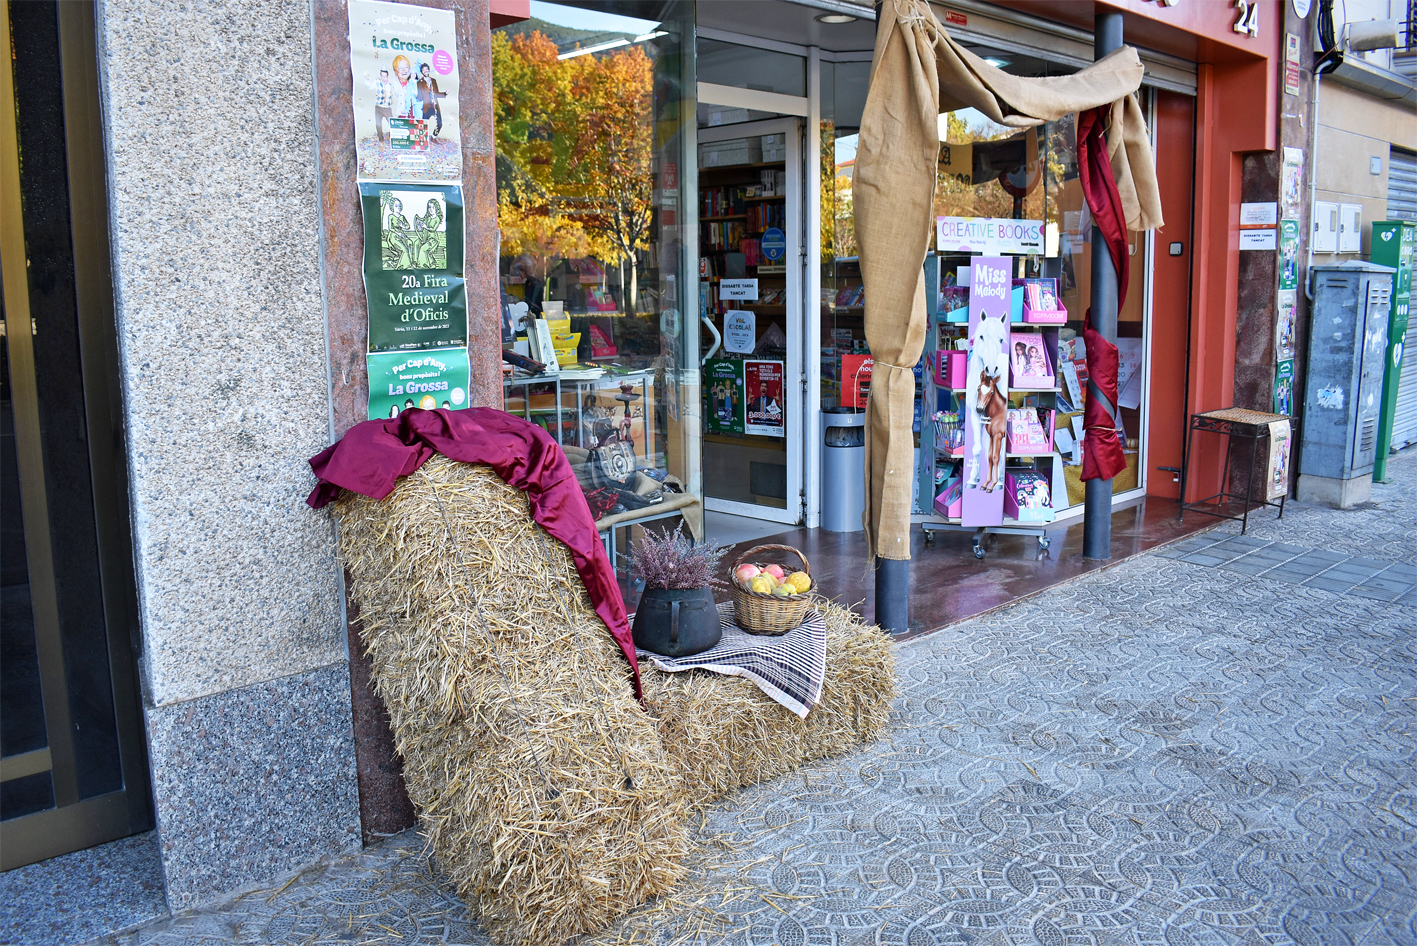 AmbientaciÃ³ dâ€™un establiment comercial del centre de la vila, durant la 20a Fira Medieval dâ€™Oficis de SÃºria.